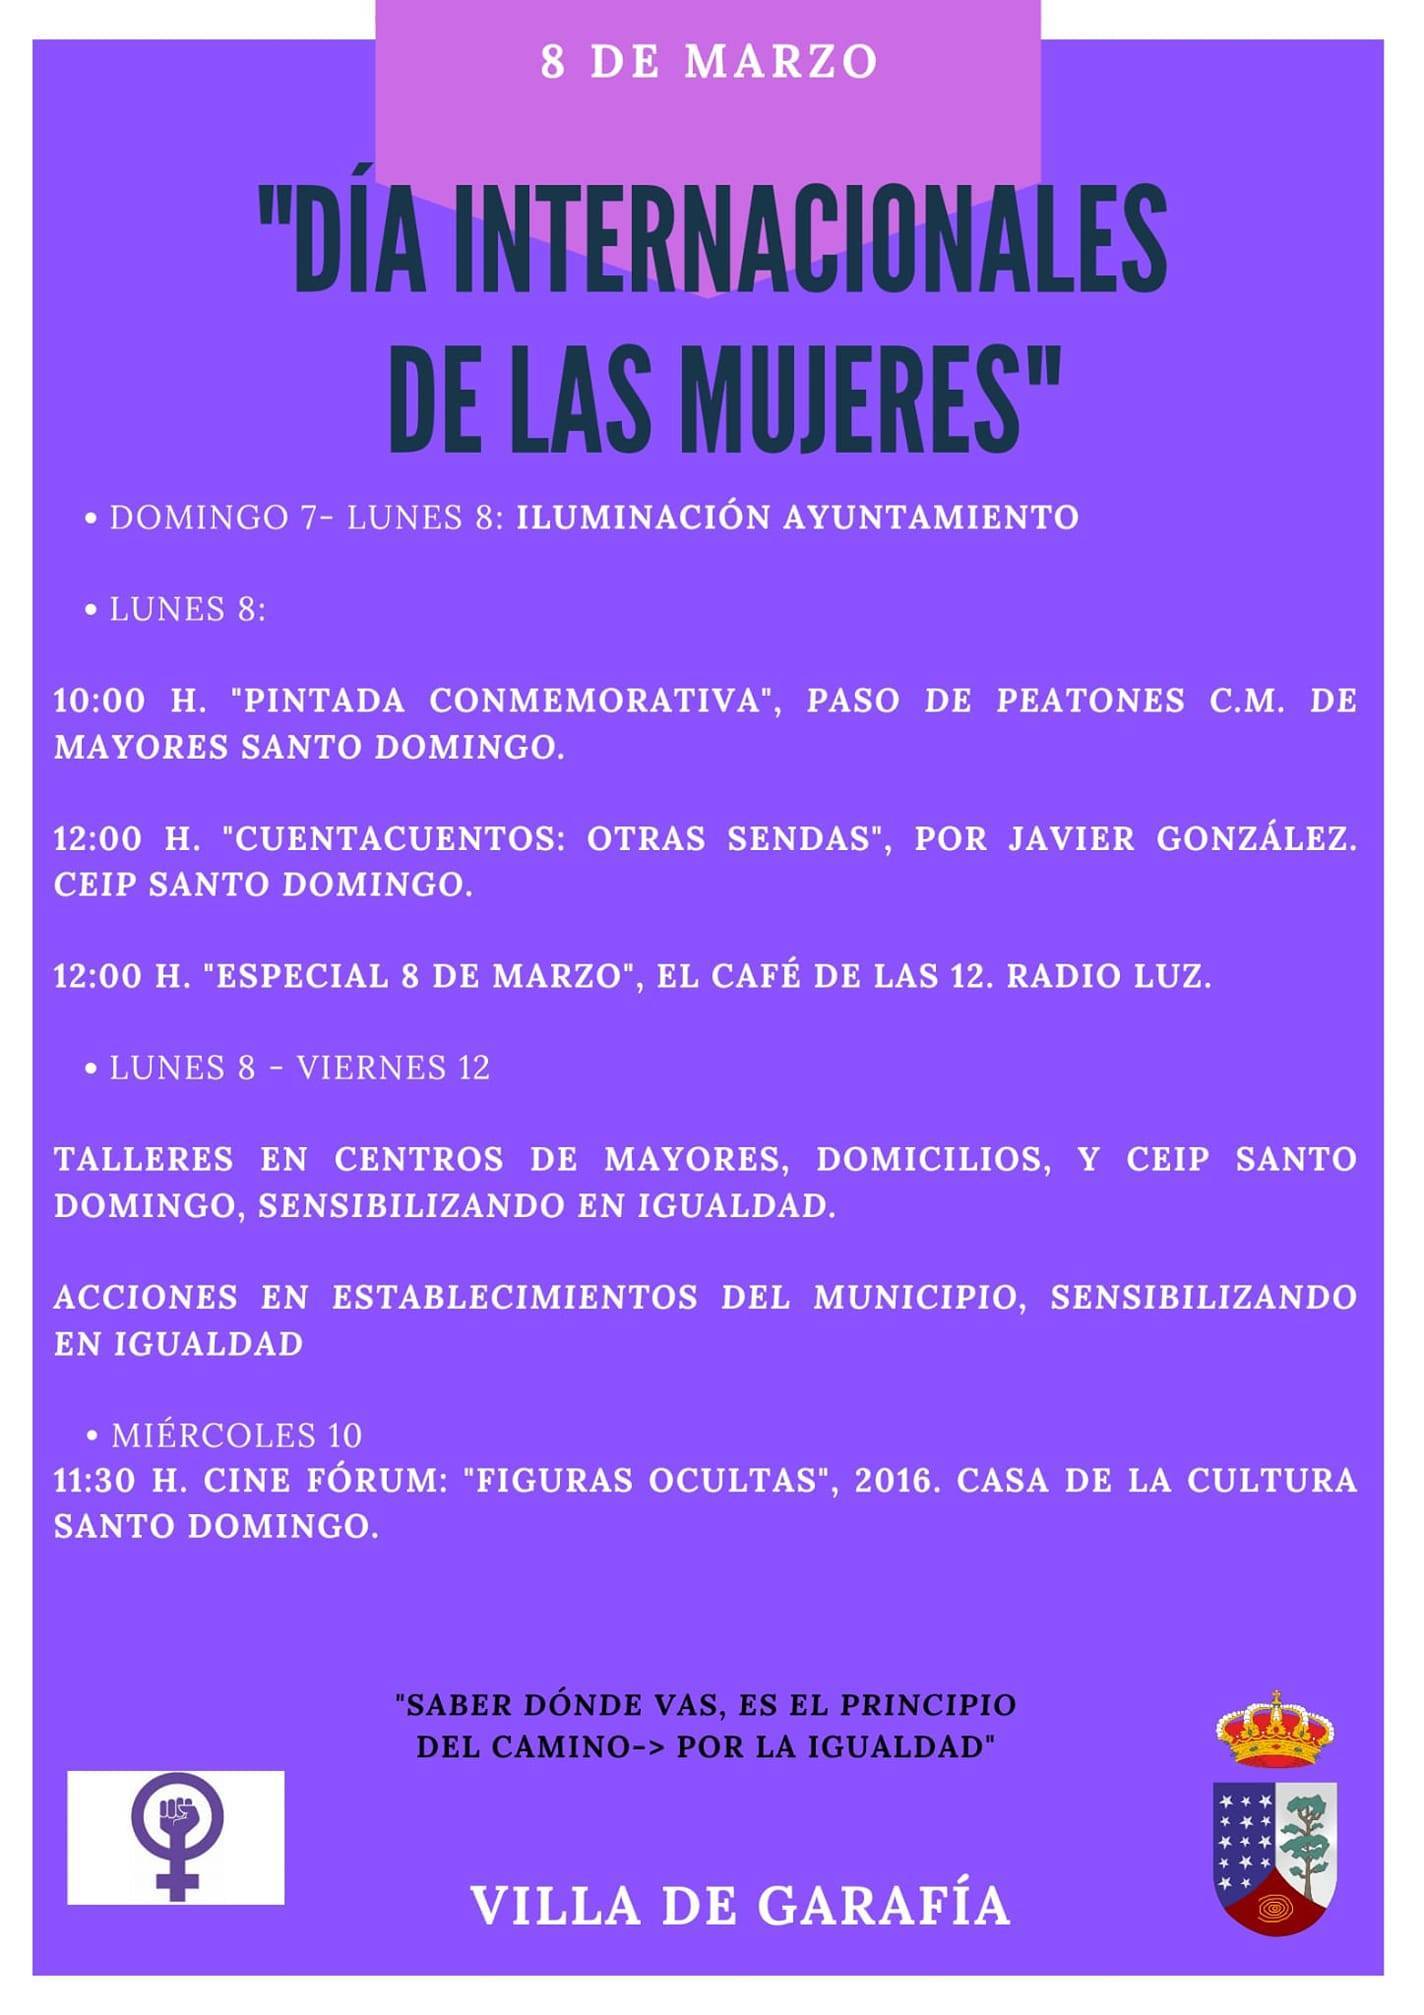 Día Internacional de la Mujer (2021) - Garafía (Santa Cruz de Tenerife)